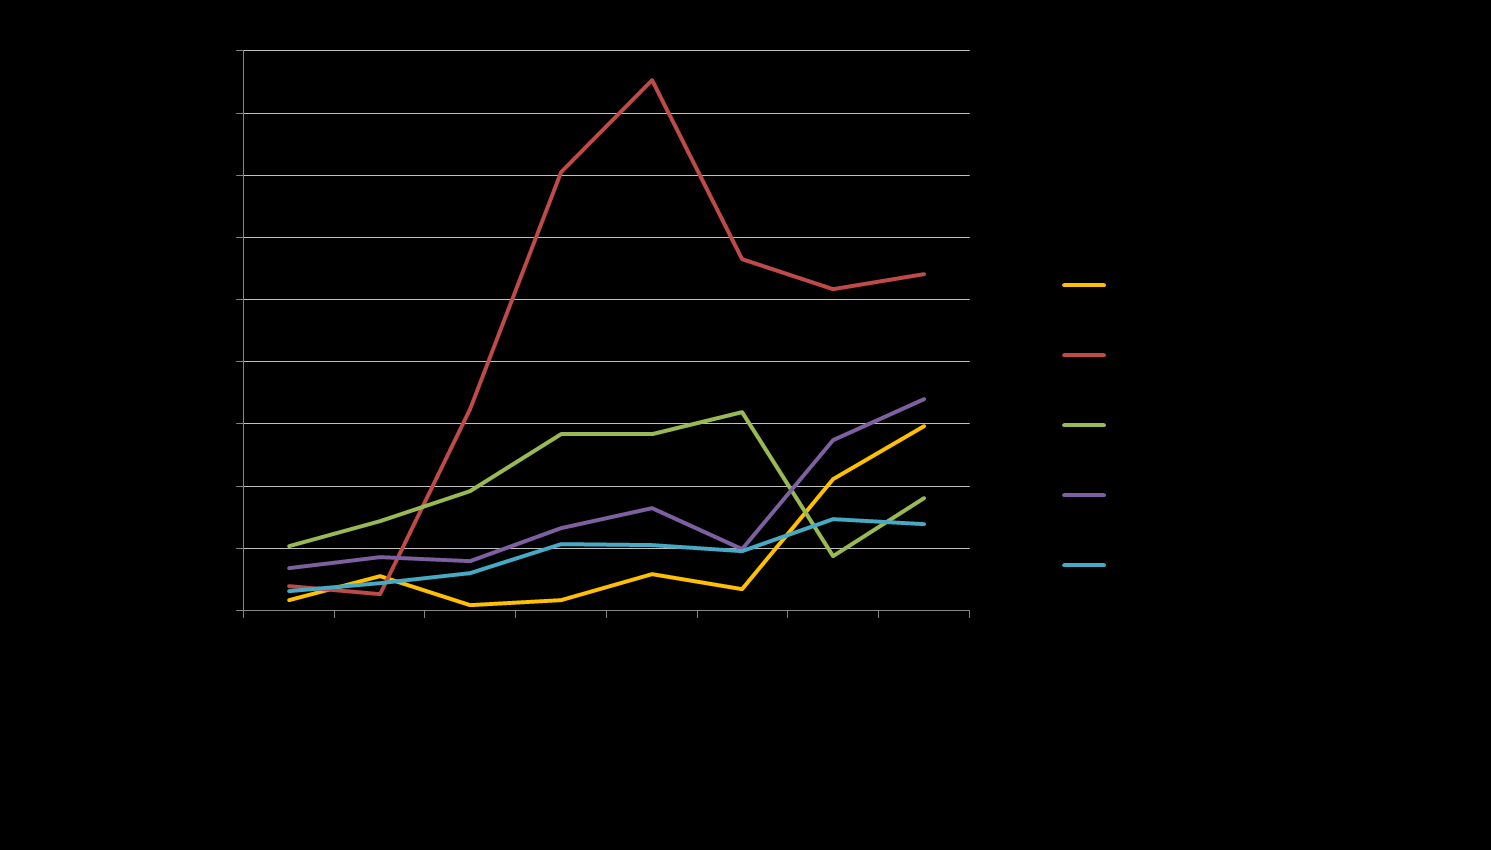 Wzrost zakażeń wśród MSM Wykres: Wskaźnik nowo wykrytych zakażeń w grupie MSM w